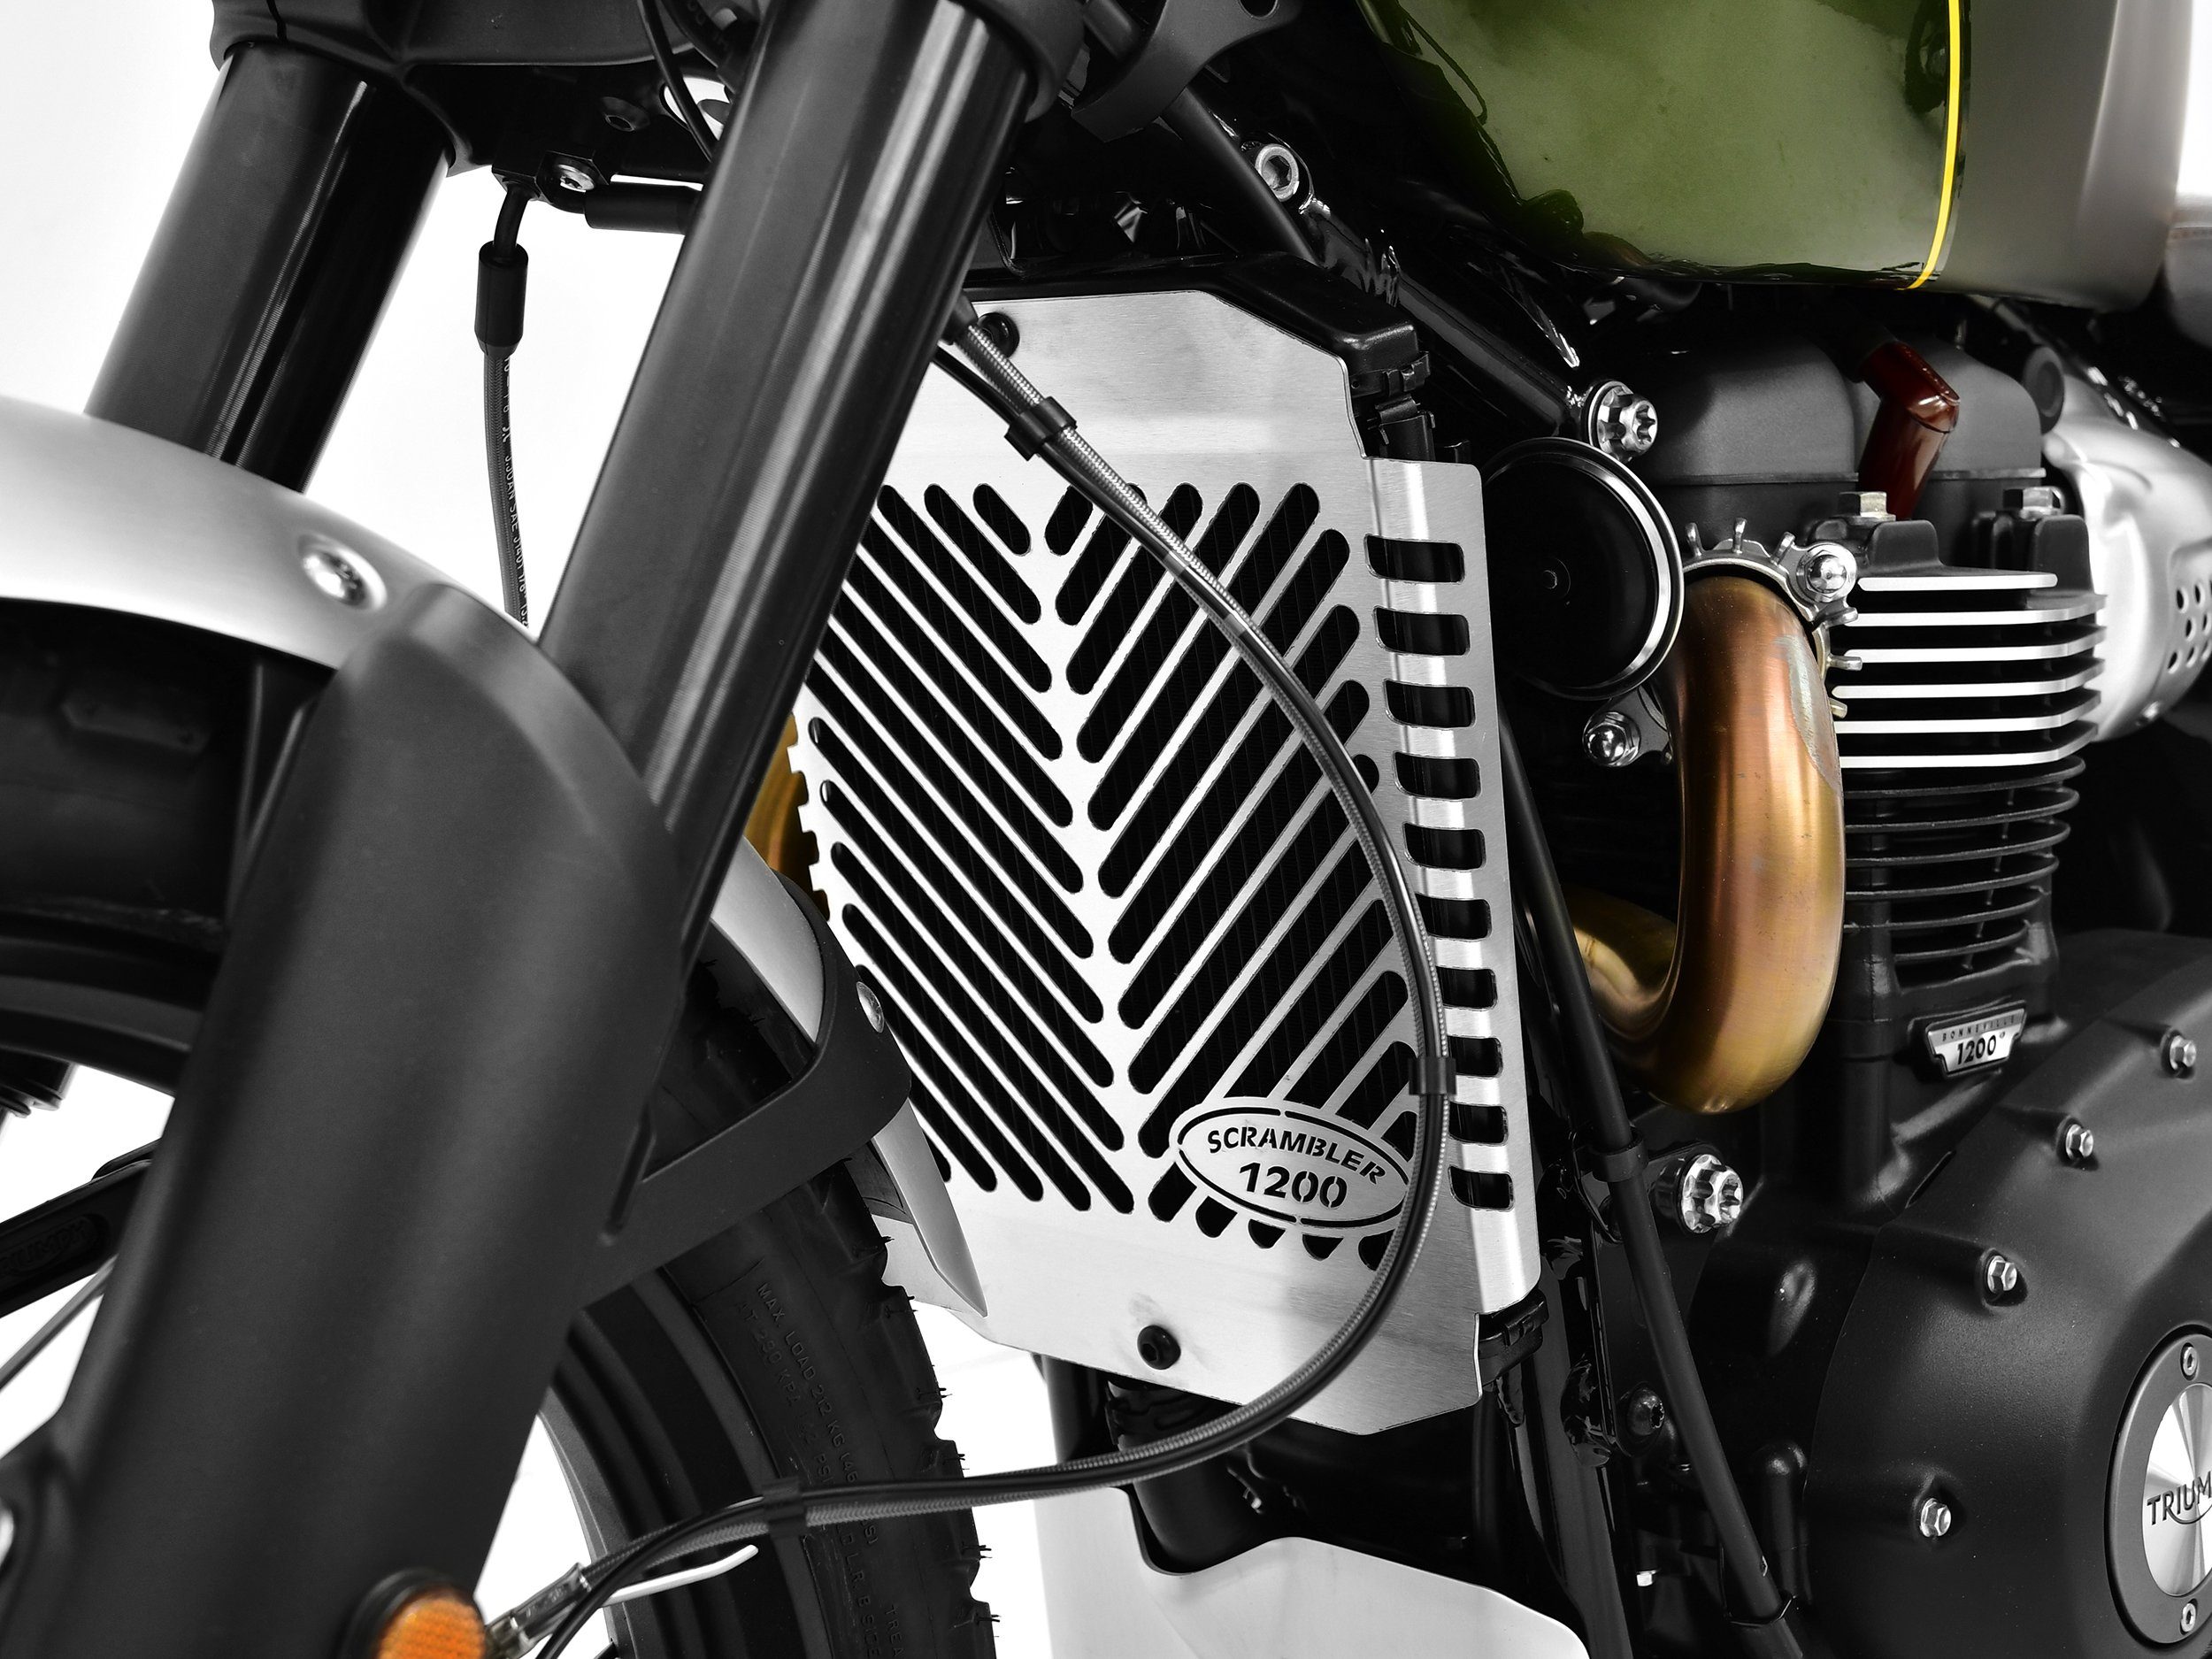 ZIEGER Motorrad-Additiv Kühlerabdeckung für Triumph 1200 Scrambler XC Logo Motorradkühlerabdeckung schwarz